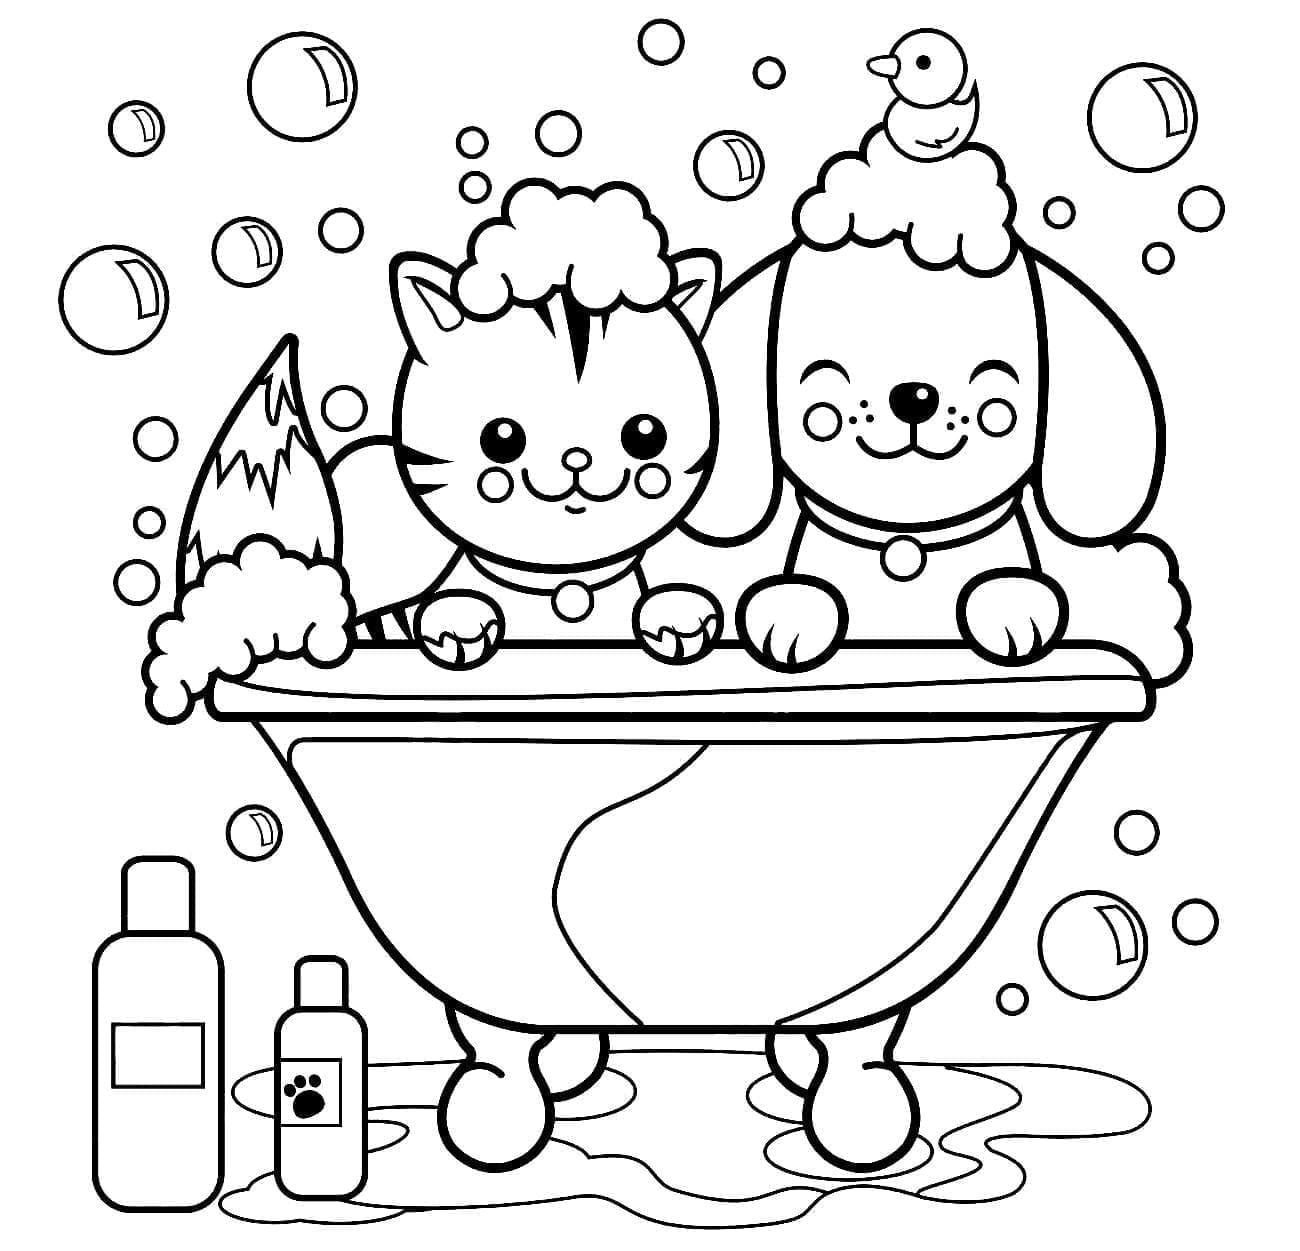 Chien et Chat 6 coloring page